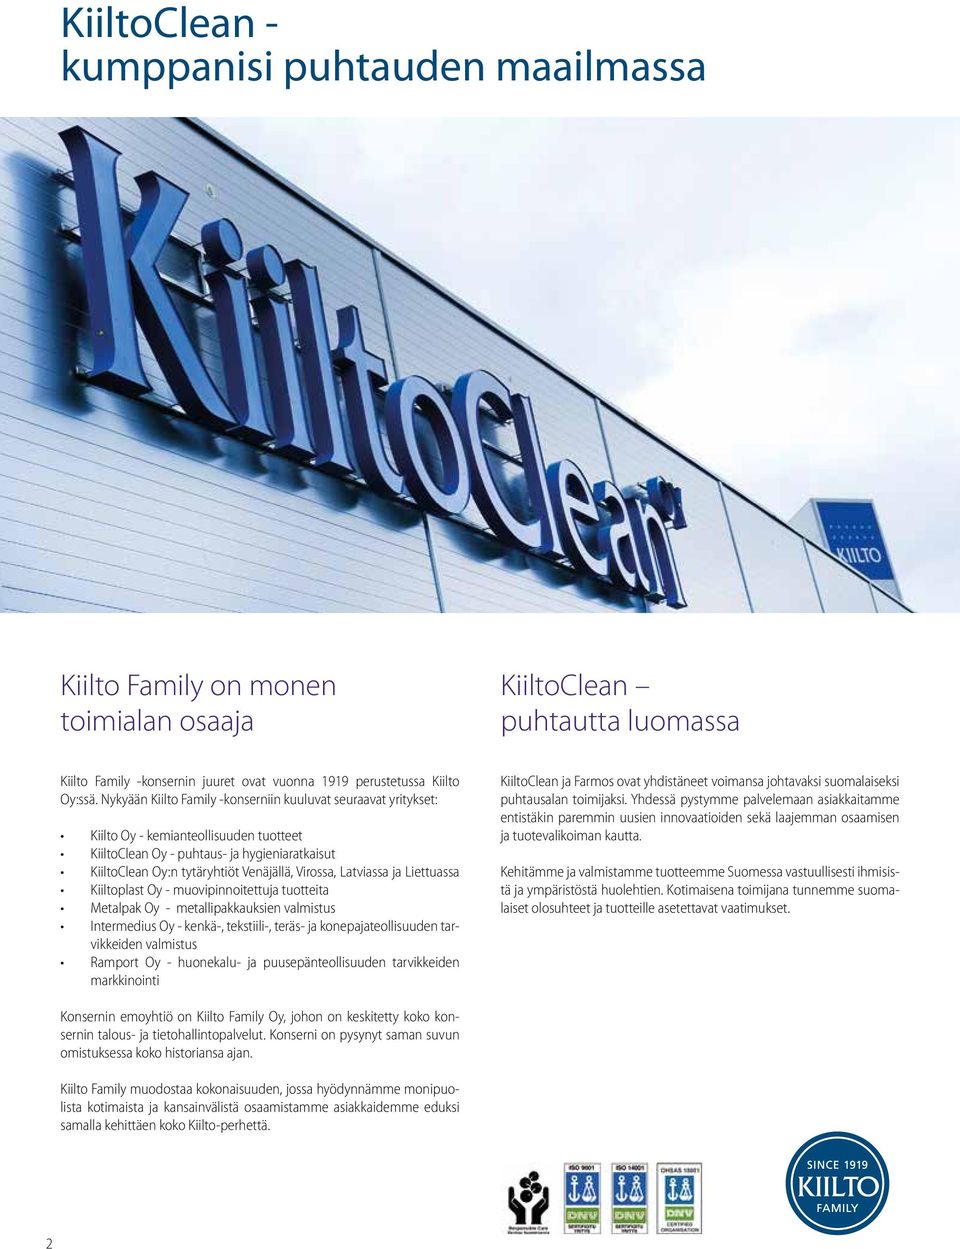 Latviassa ja Liettuassa Kiiltoplast Oy - muovipinnoitettuja tuotteita Metalpak Oy - metallipakkauksien valmistus Intermedius Oy - kenkä-, tekstiili-, teräs- ja konepajateollisuuden tarvikkeiden